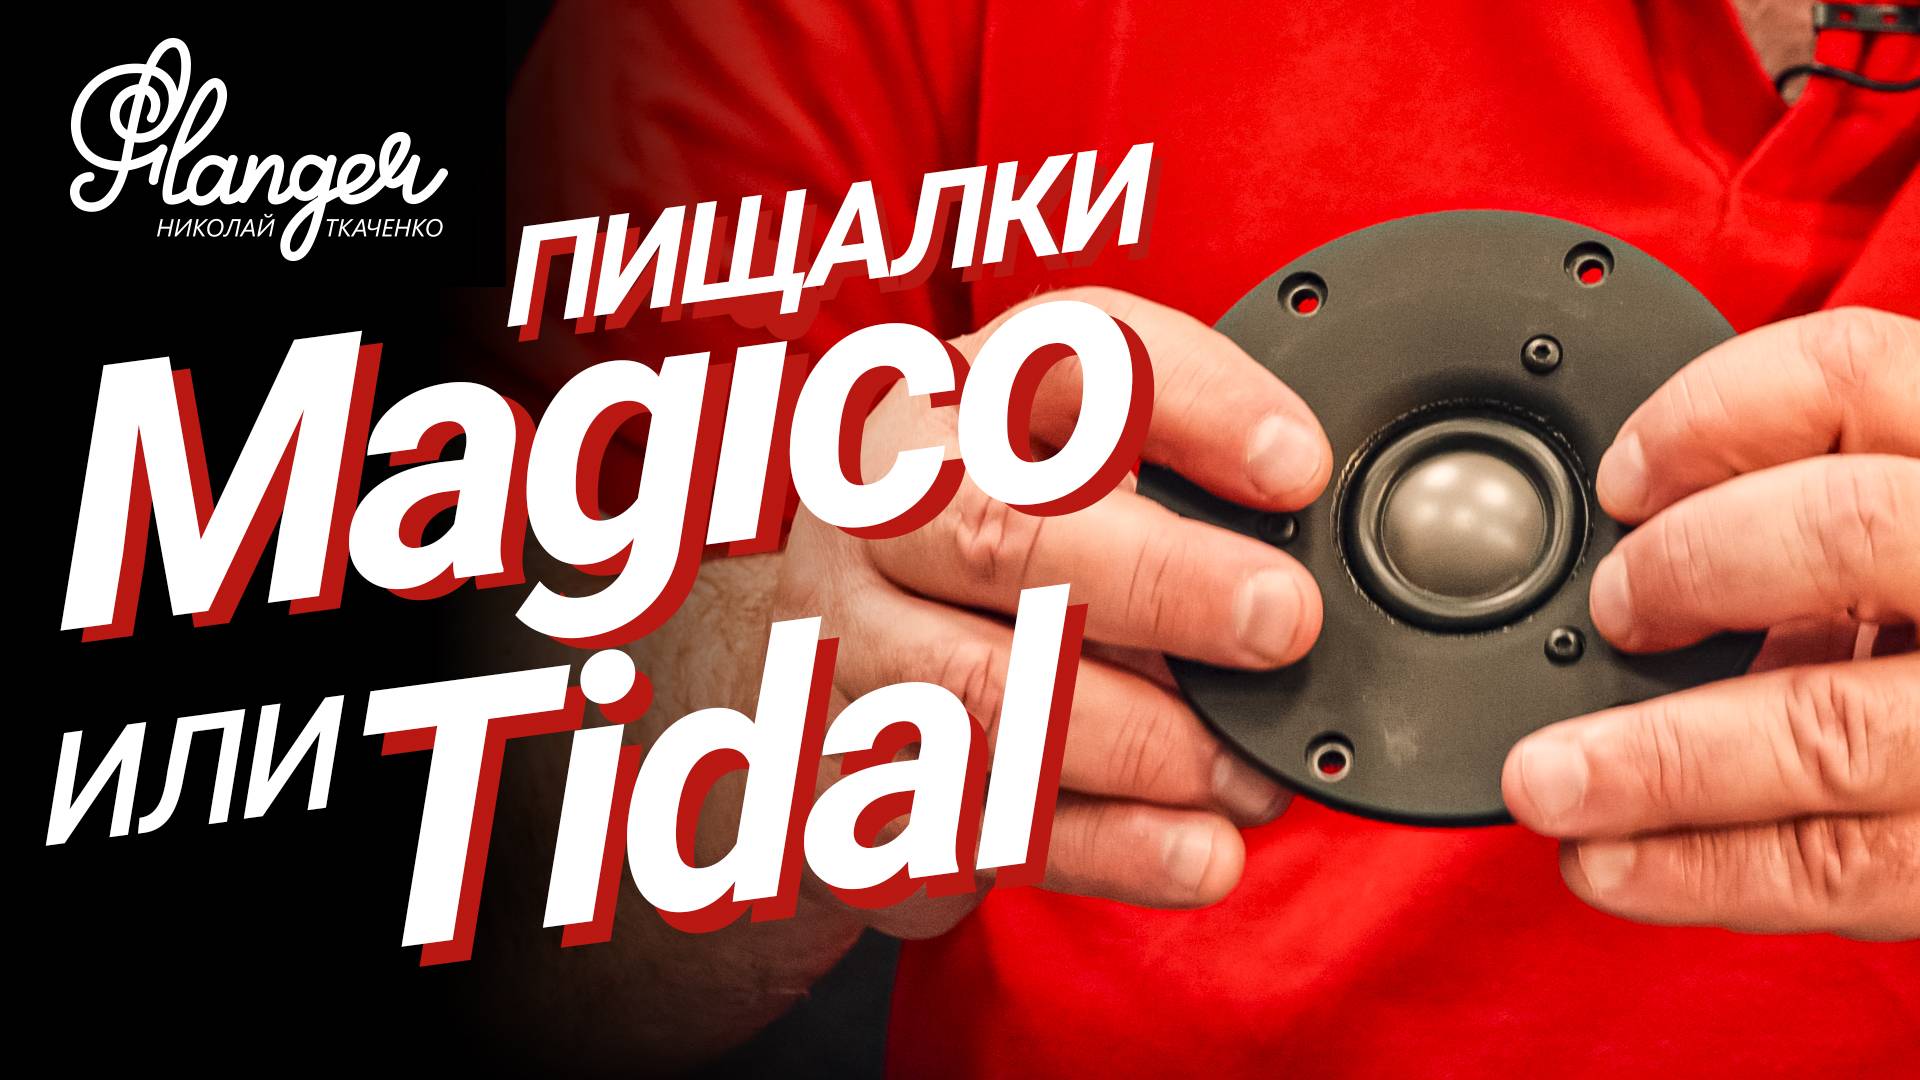 Конструкция высокочастотного излучателя Magico S5. Кто лучше Magico или Tidal?